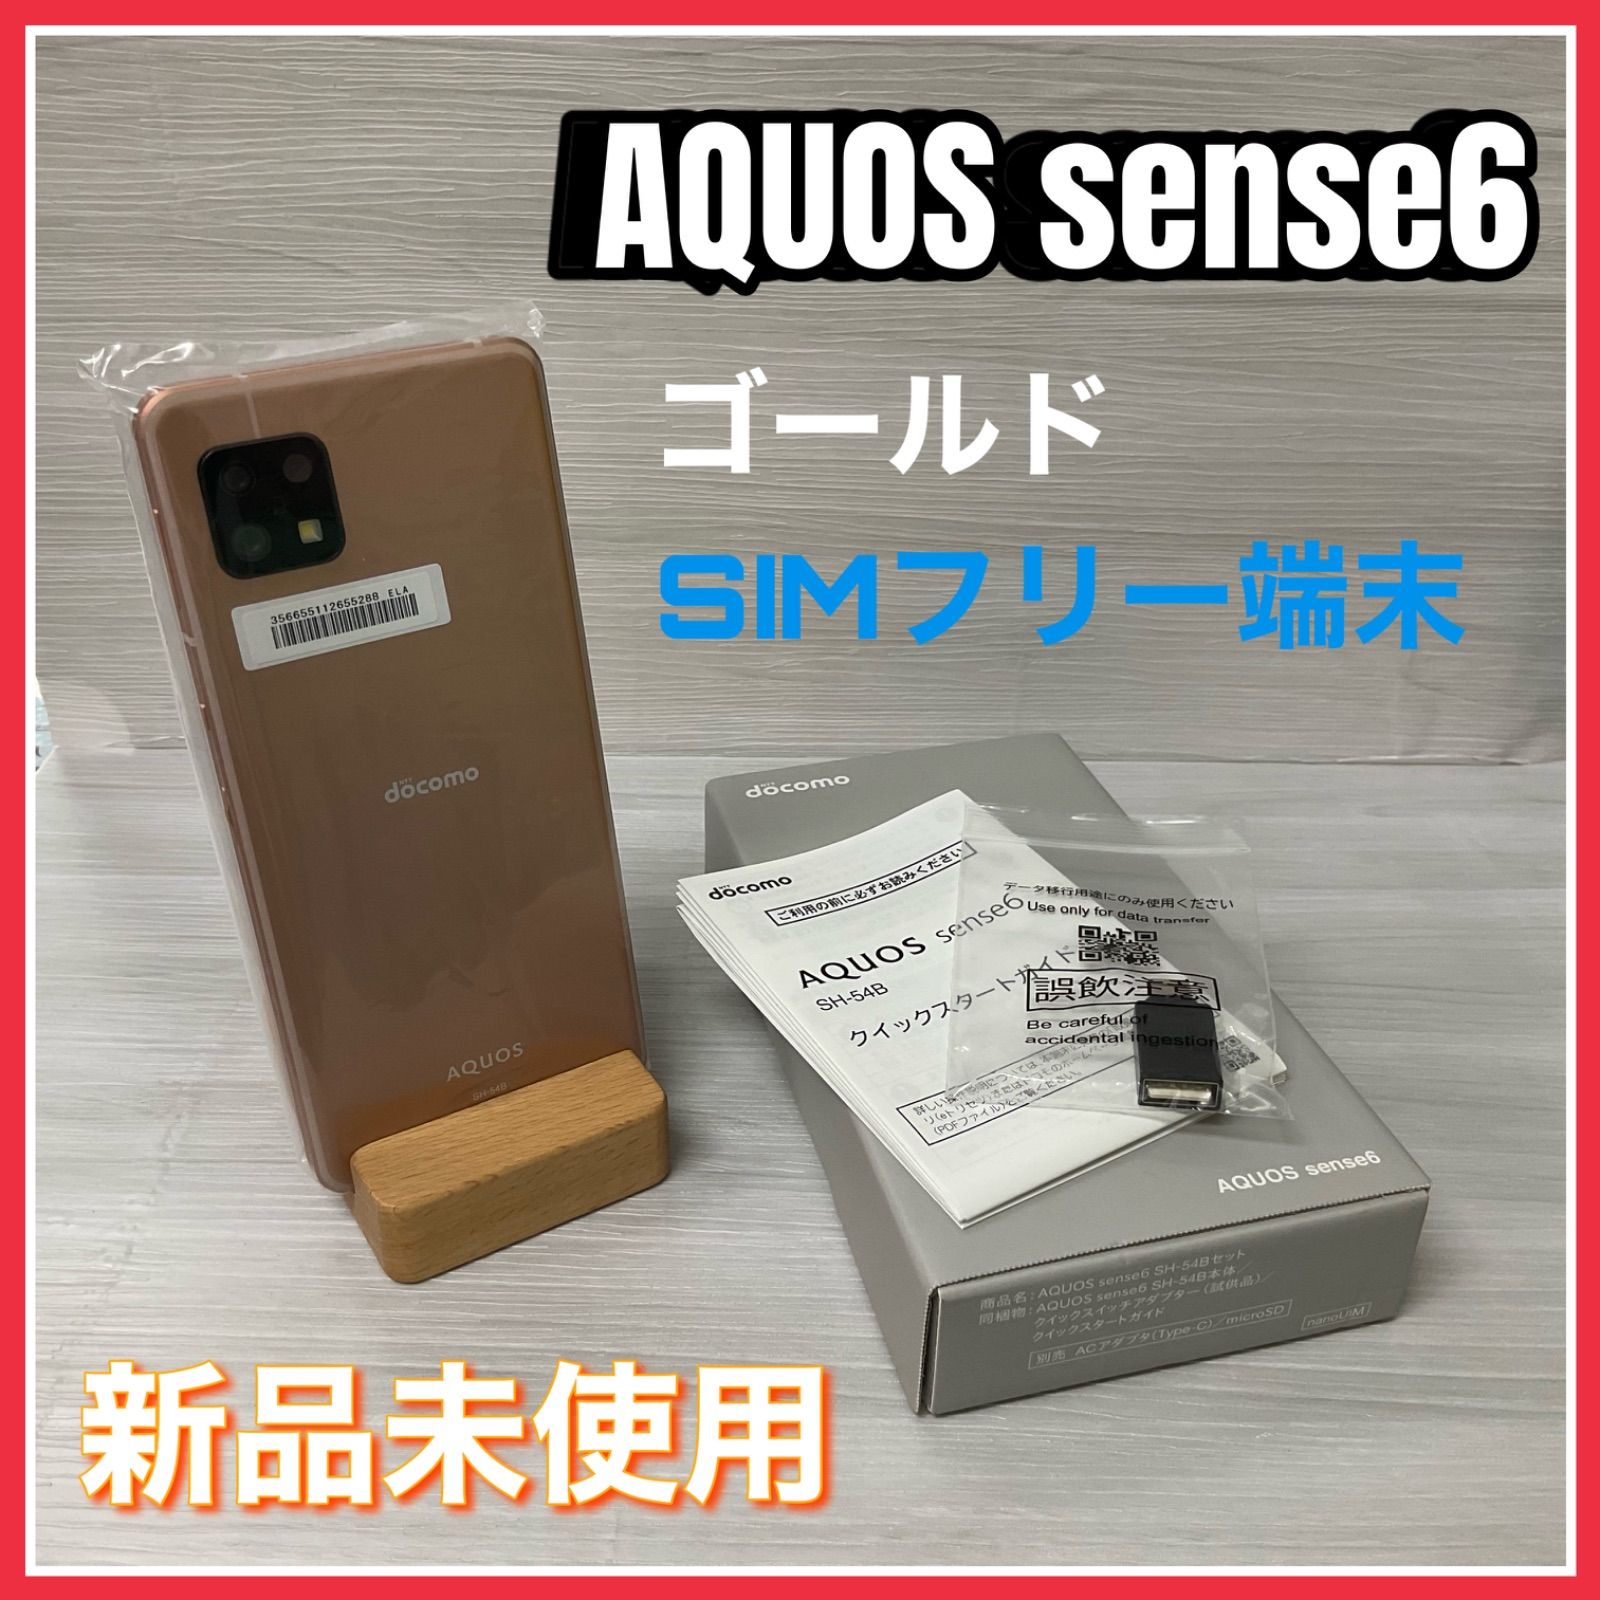 大評判 AQUOS sense6 docomo版 - スマートフォン/携帯電話